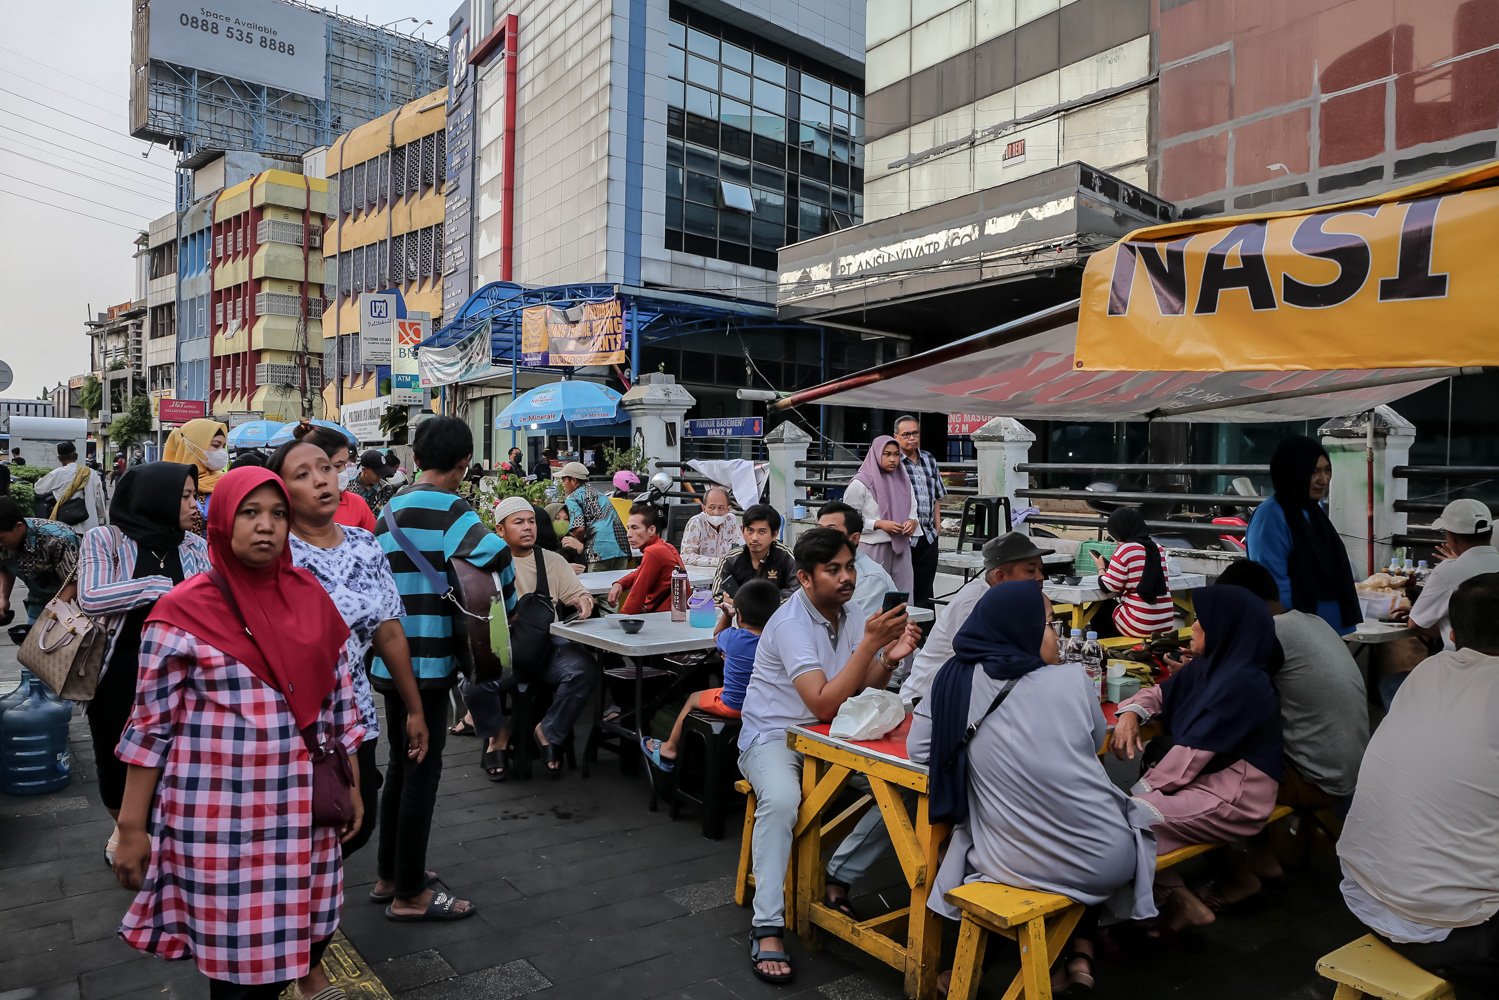 Pengunjung menantikan adzan magrib di Sentra kuliner Nasi Kapau, Jalan Kramat Raya, Senen, Jakarta Pusat, Jumat (24/3). Menjelang berbuka puasa sentra kuliner yang menyajikan Nasi Kapau dan berbagai makanan khas sumatra barat ini ramai dikunjungi pembeli.